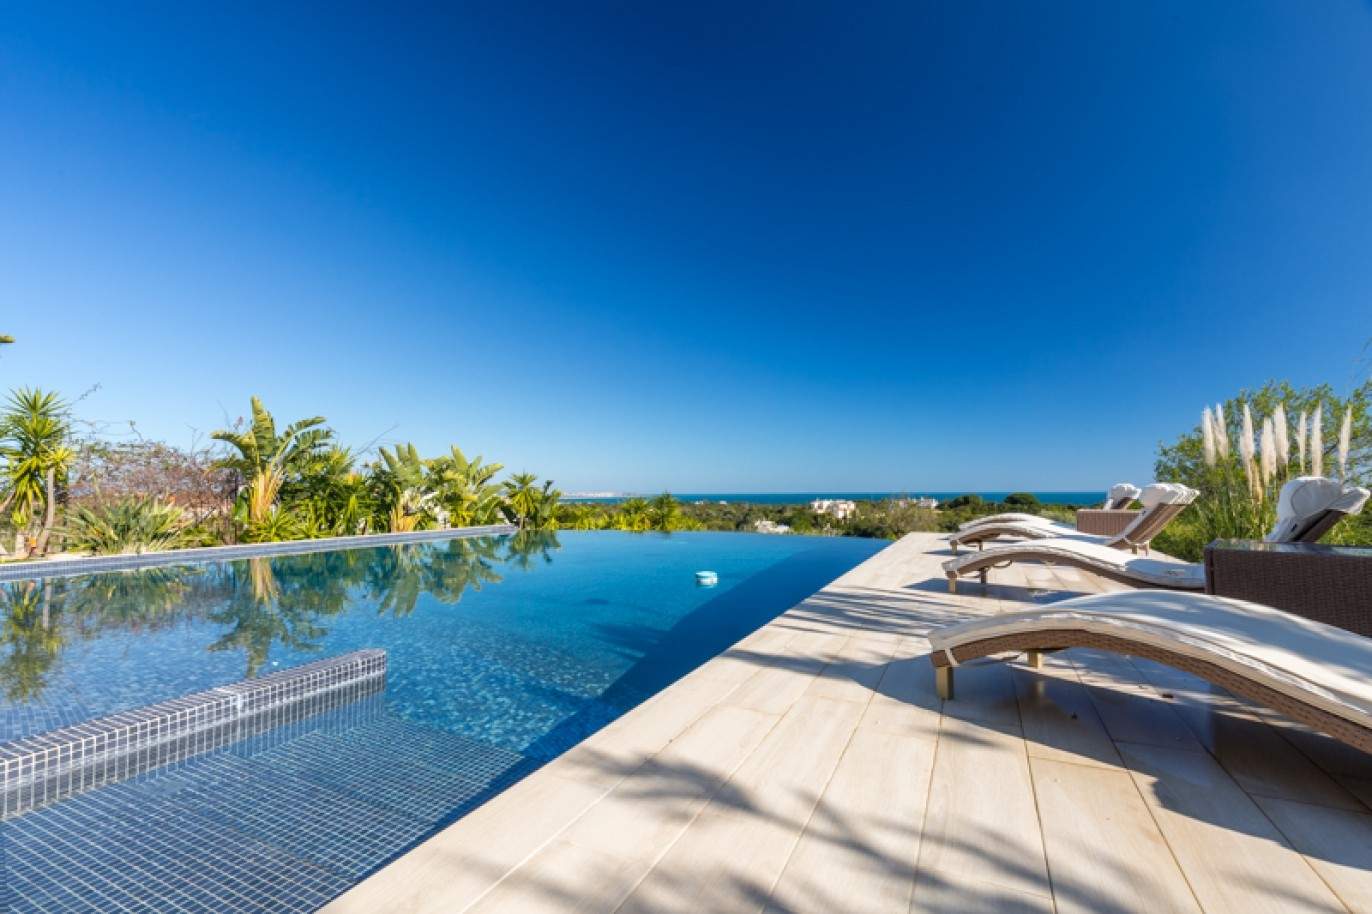 Freistehende villa zum Verkauf mit Meerblick, in der Nähe von Strand und golf, Carvoeiro, Algarve, Portugal_76403